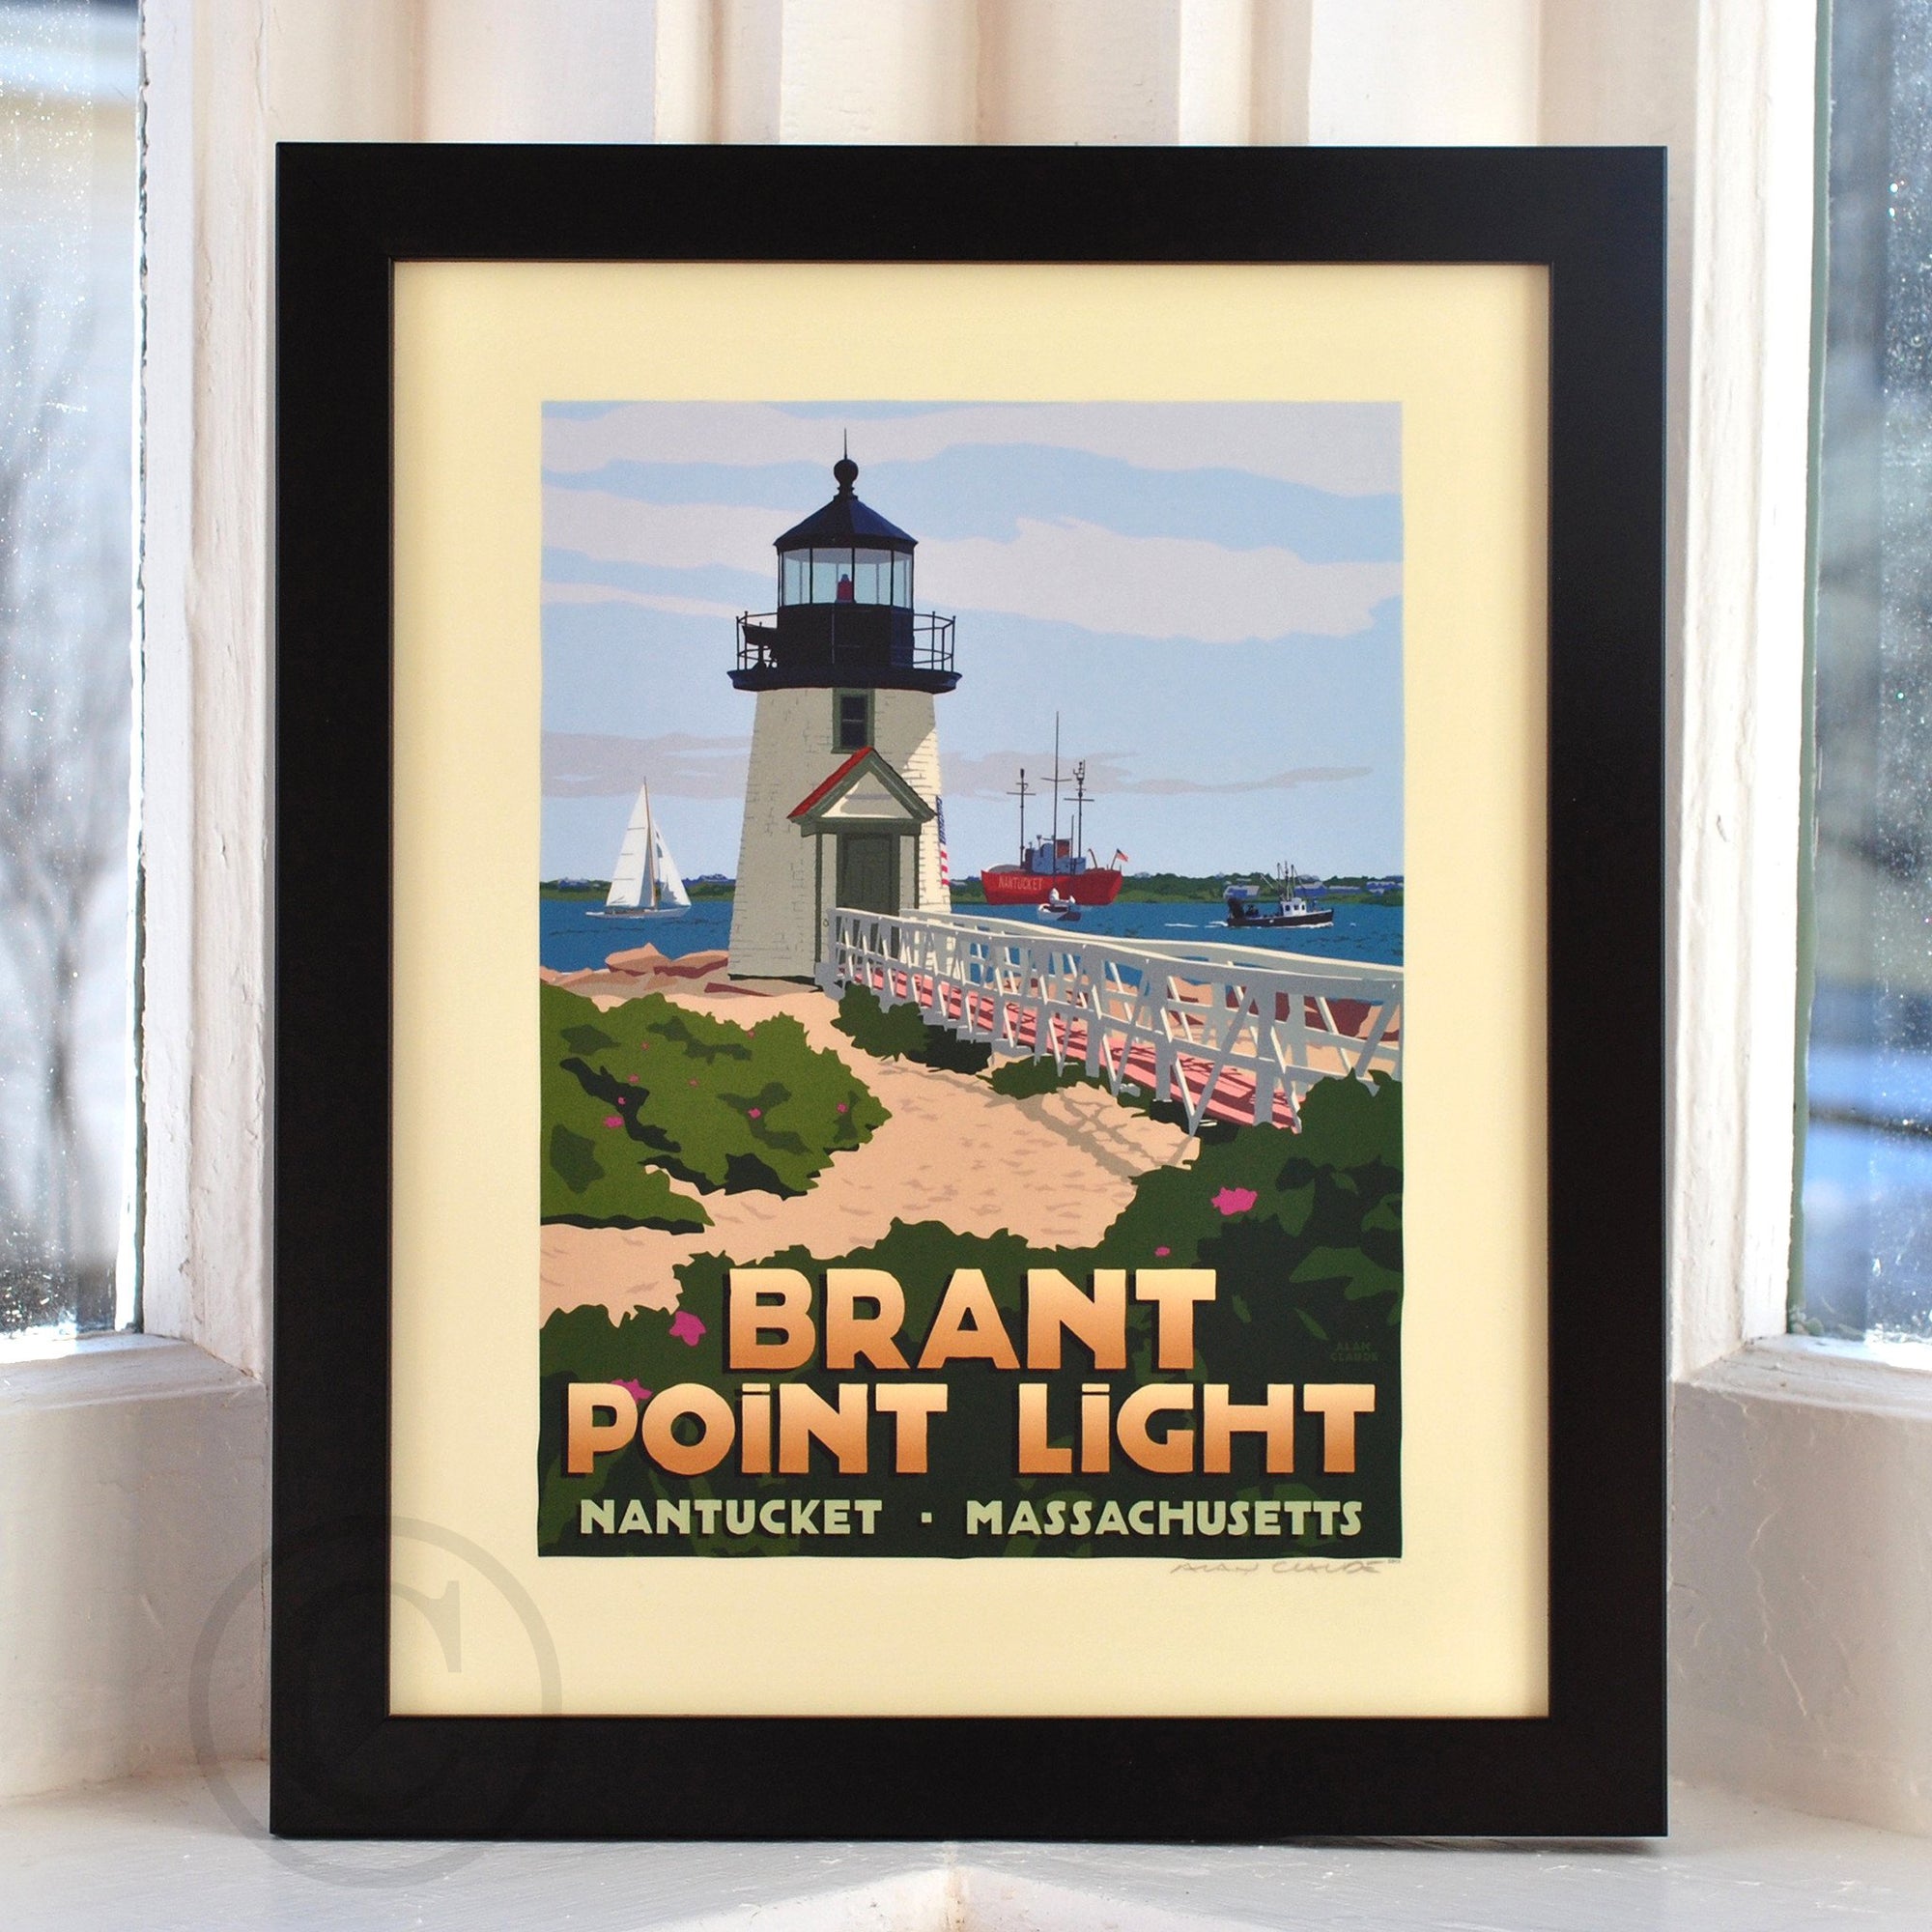 Brant Point Light Art Print 8" x 10" Framed Travel Poster By Alan Claude - Massachusetts